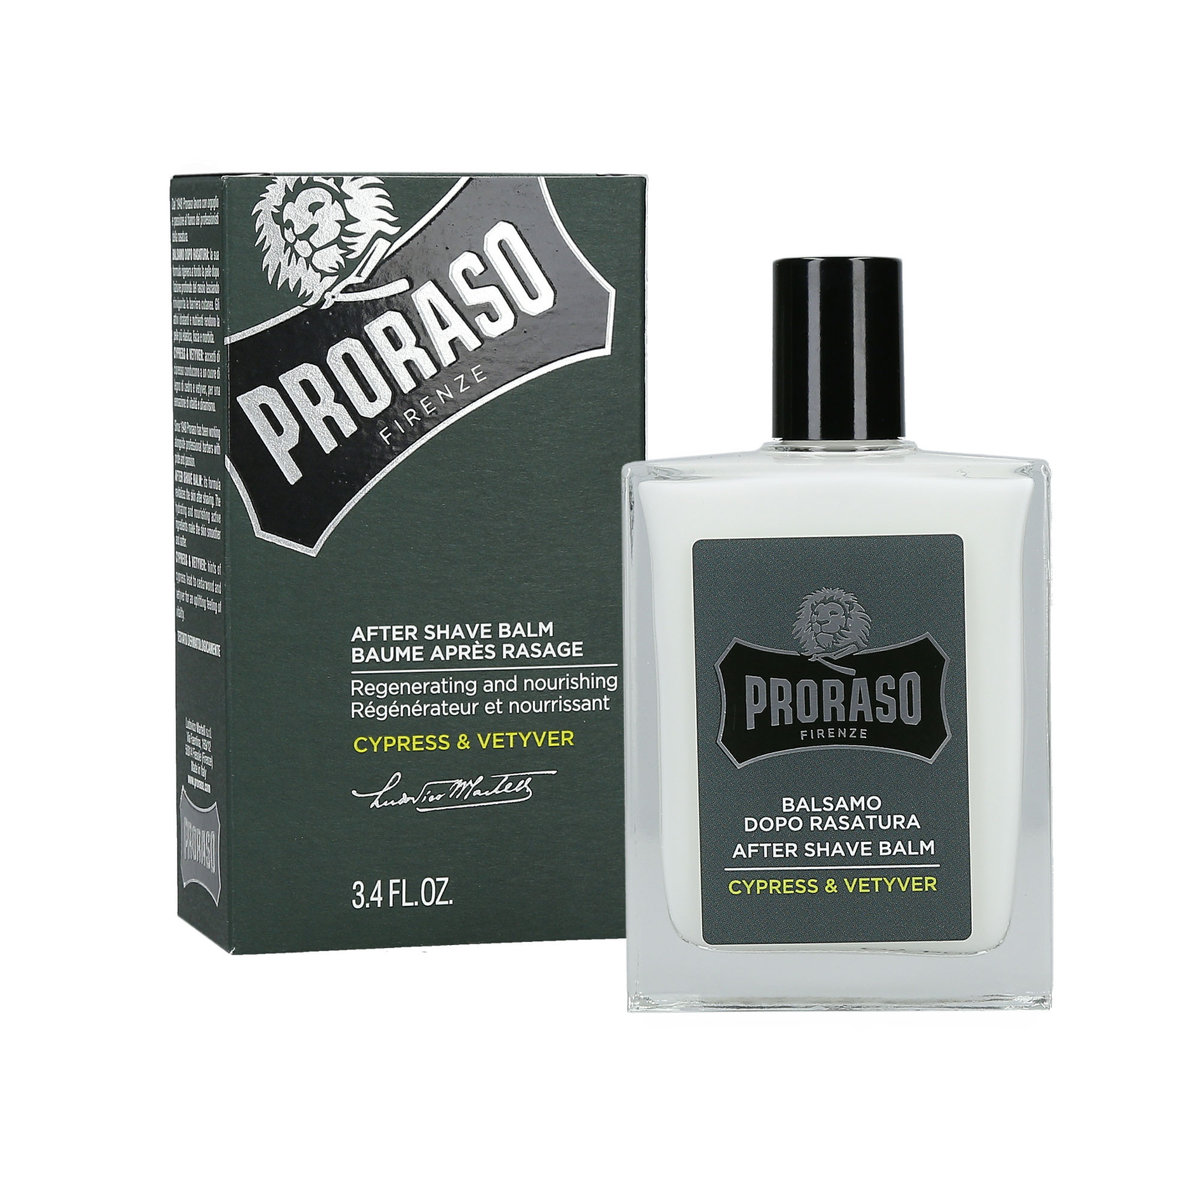 PRORASO Cypress & Vetyver nawilżający balsam po goleniu odżywczy krem regenerujący 100 ml